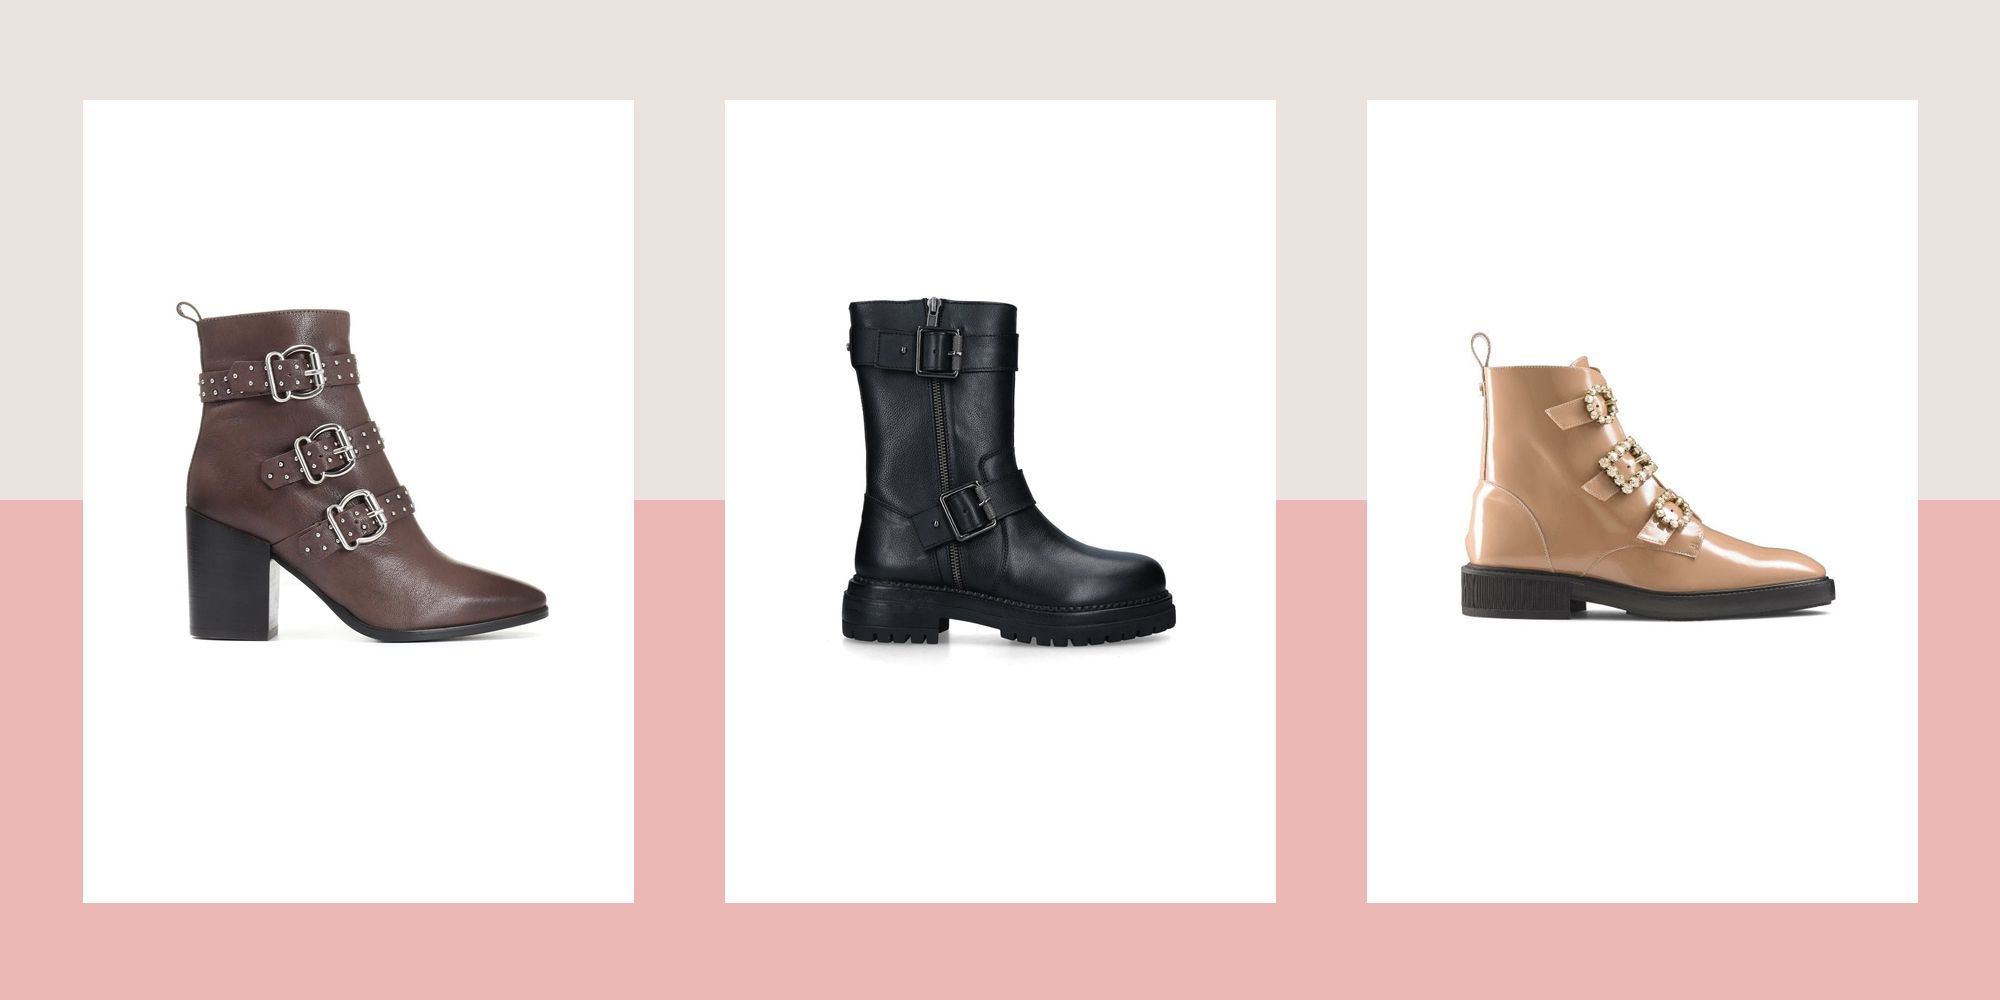 Buy > women's brown biker boots > in stock